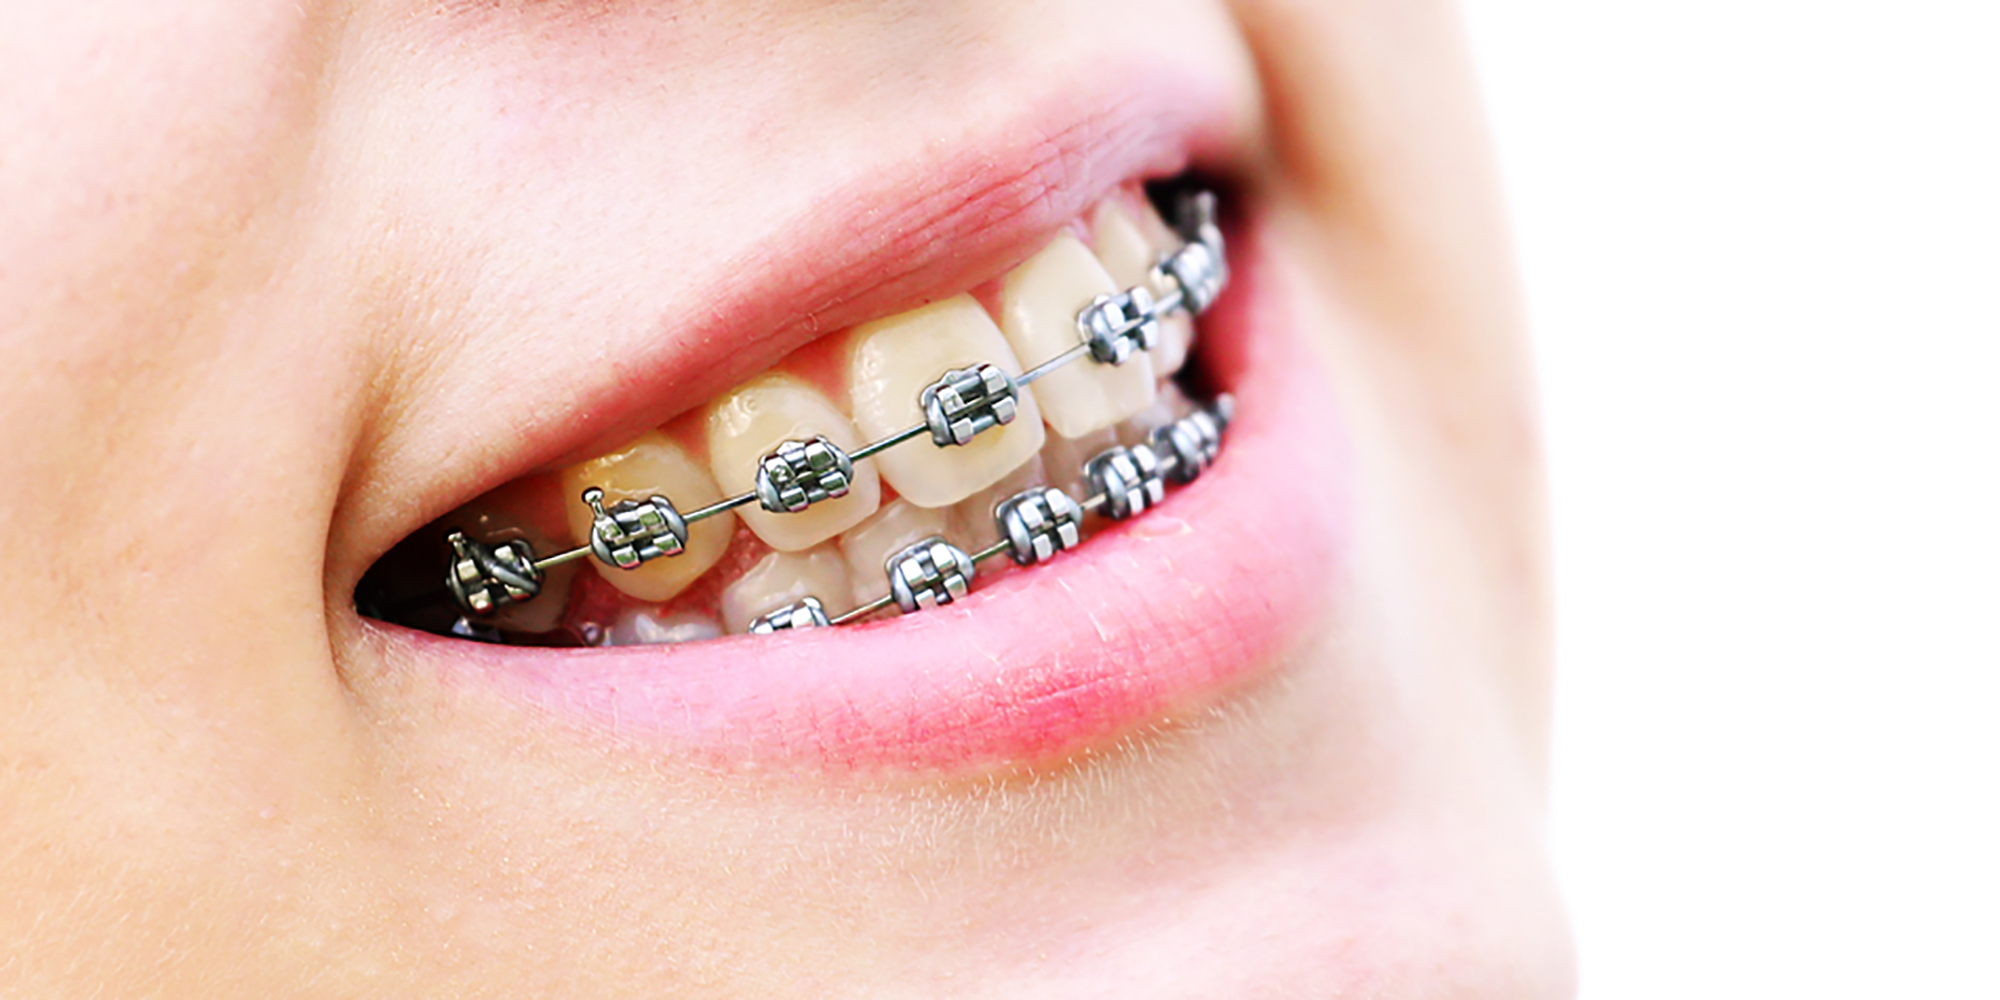 De optimale kracht voor orthodontische tandverplaatsing